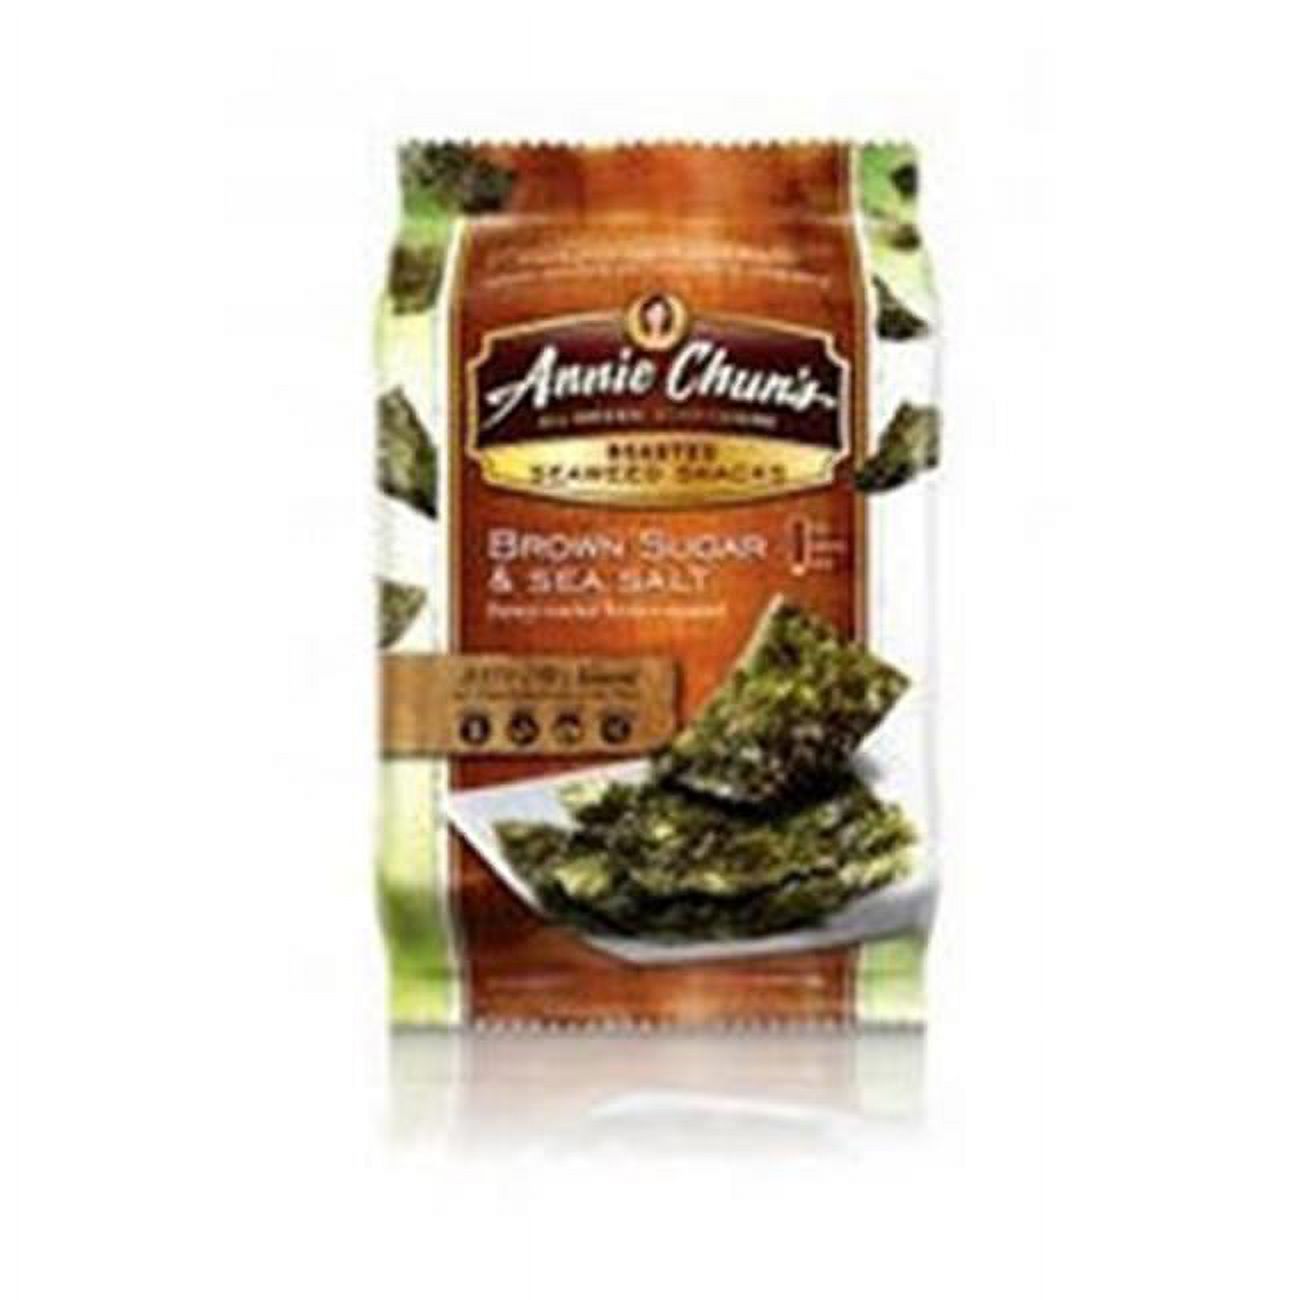 Annie Chun'S Brown Sugar Sea Salt Seaweed Snacks . 35 Oz -Pack of 12 - image 1 of 1